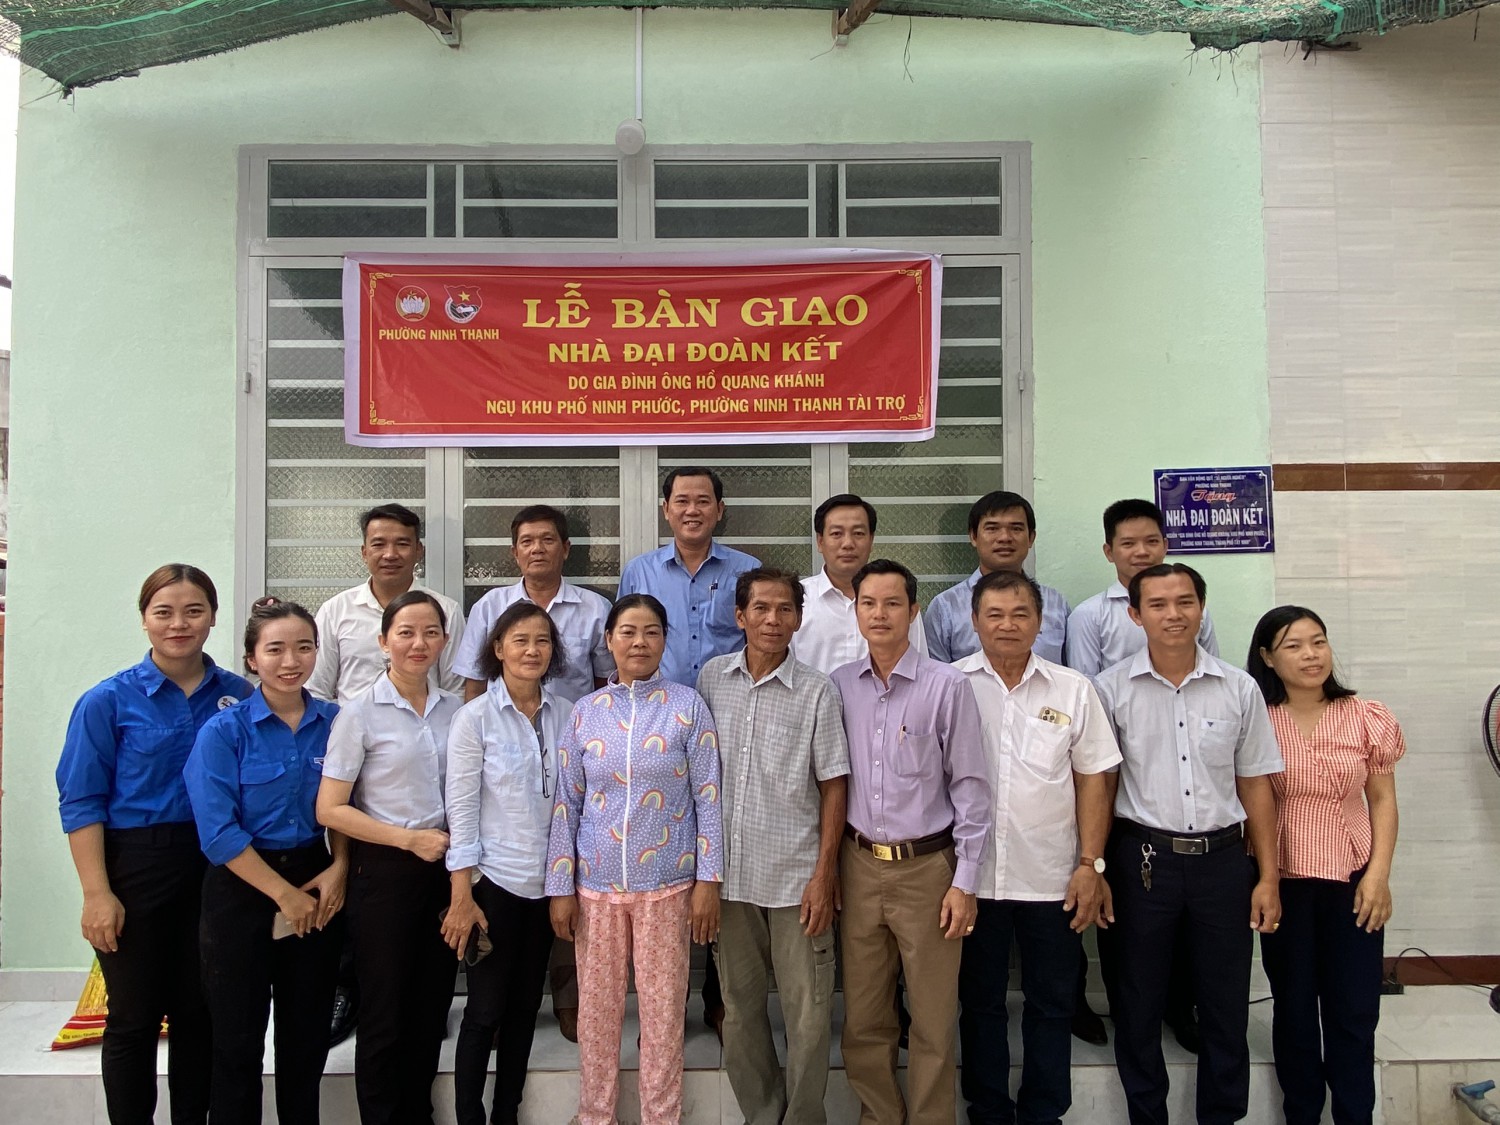 Ban chỉ đạo Quỹ "Vì người nghèo" phường Ninh Thạnh tổ chức Lễ bàn giao nhà “Đại Đoàn kết” cho hộ gia đình khó khăn.